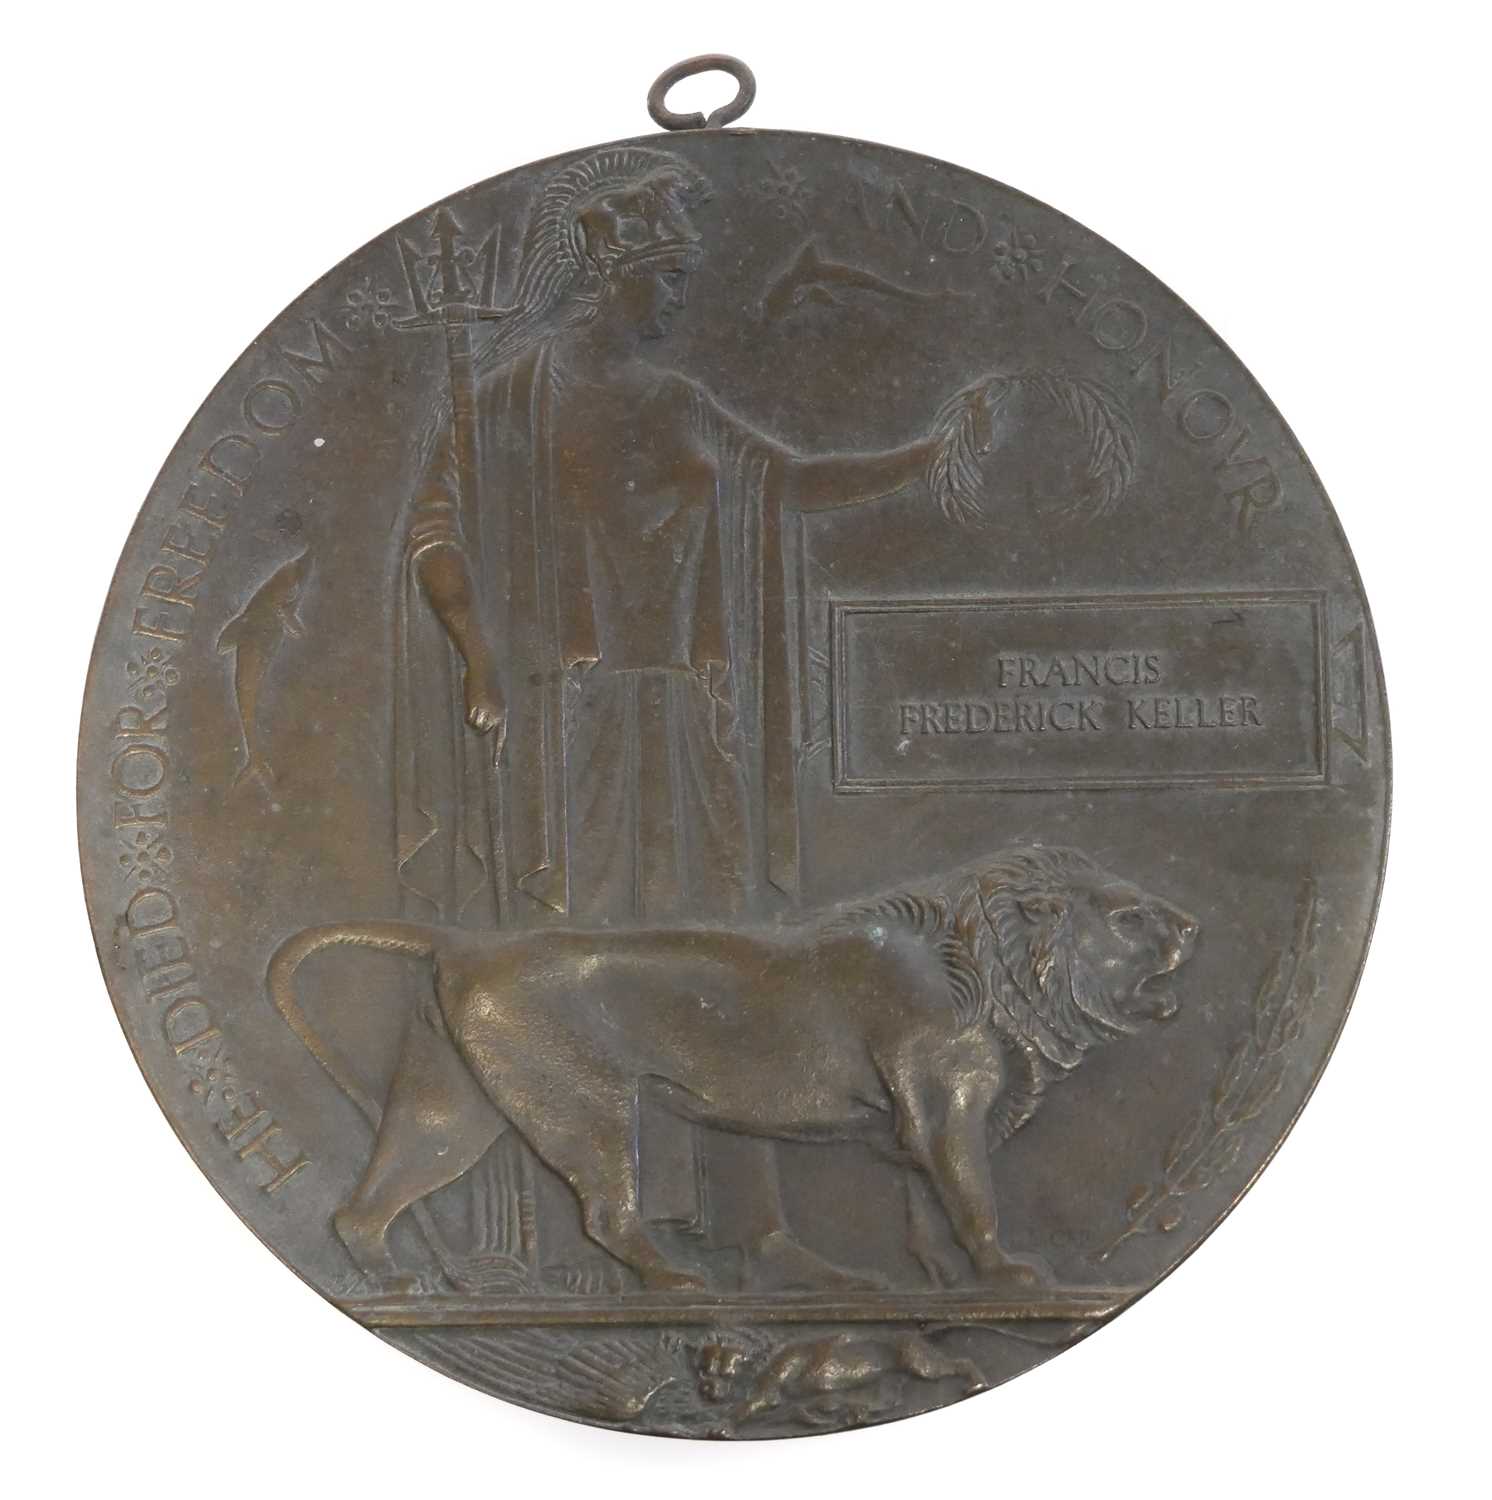 Lot 393 - WWI bronze death plaque